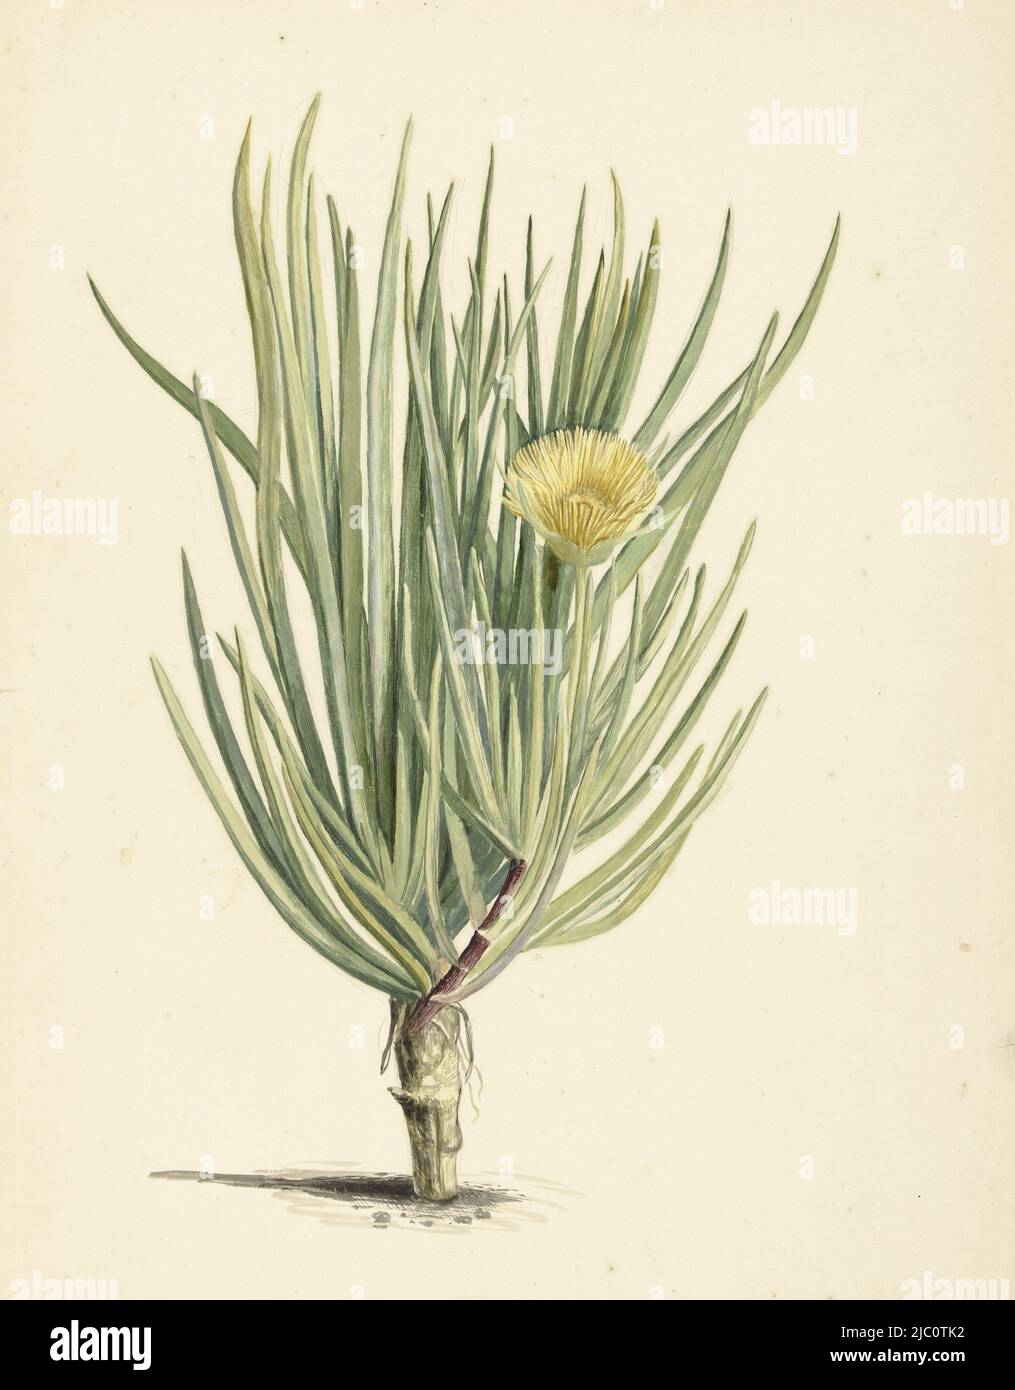 Narrow-leaved Iceplant in Bloom, draughtsman: Laurens Vincentsz. van der Vinne, 1668 - 1729, paper, brush, h 530 mm × w 370 mm Stock Photo